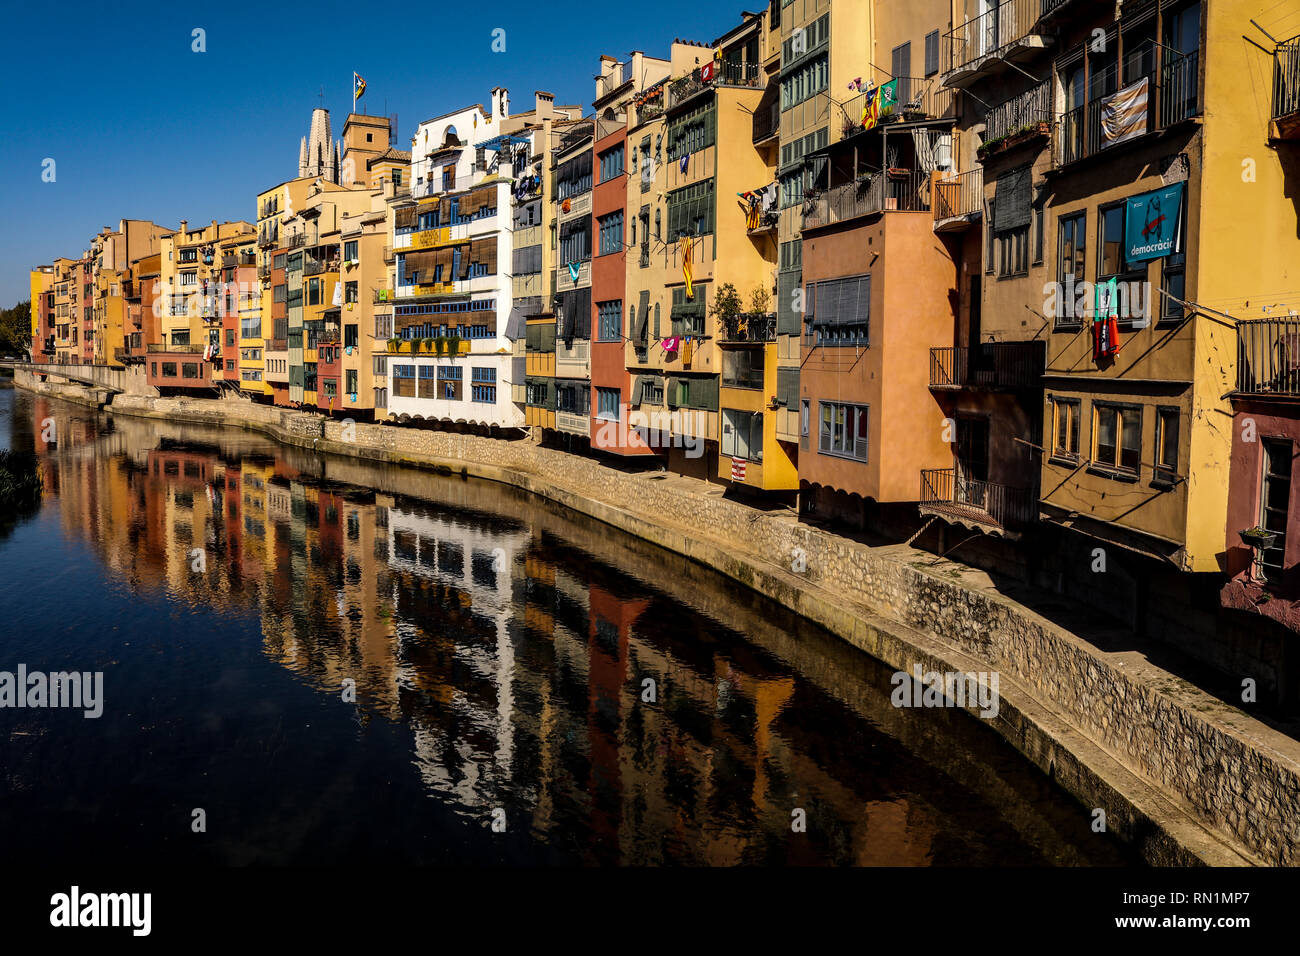 Vue de bâtiments colorés donnant sur la rivière, à Gérone, avec une réflexion sur le bord de l'eau, de gras saturés et de couleurs profondes. Banque D'Images